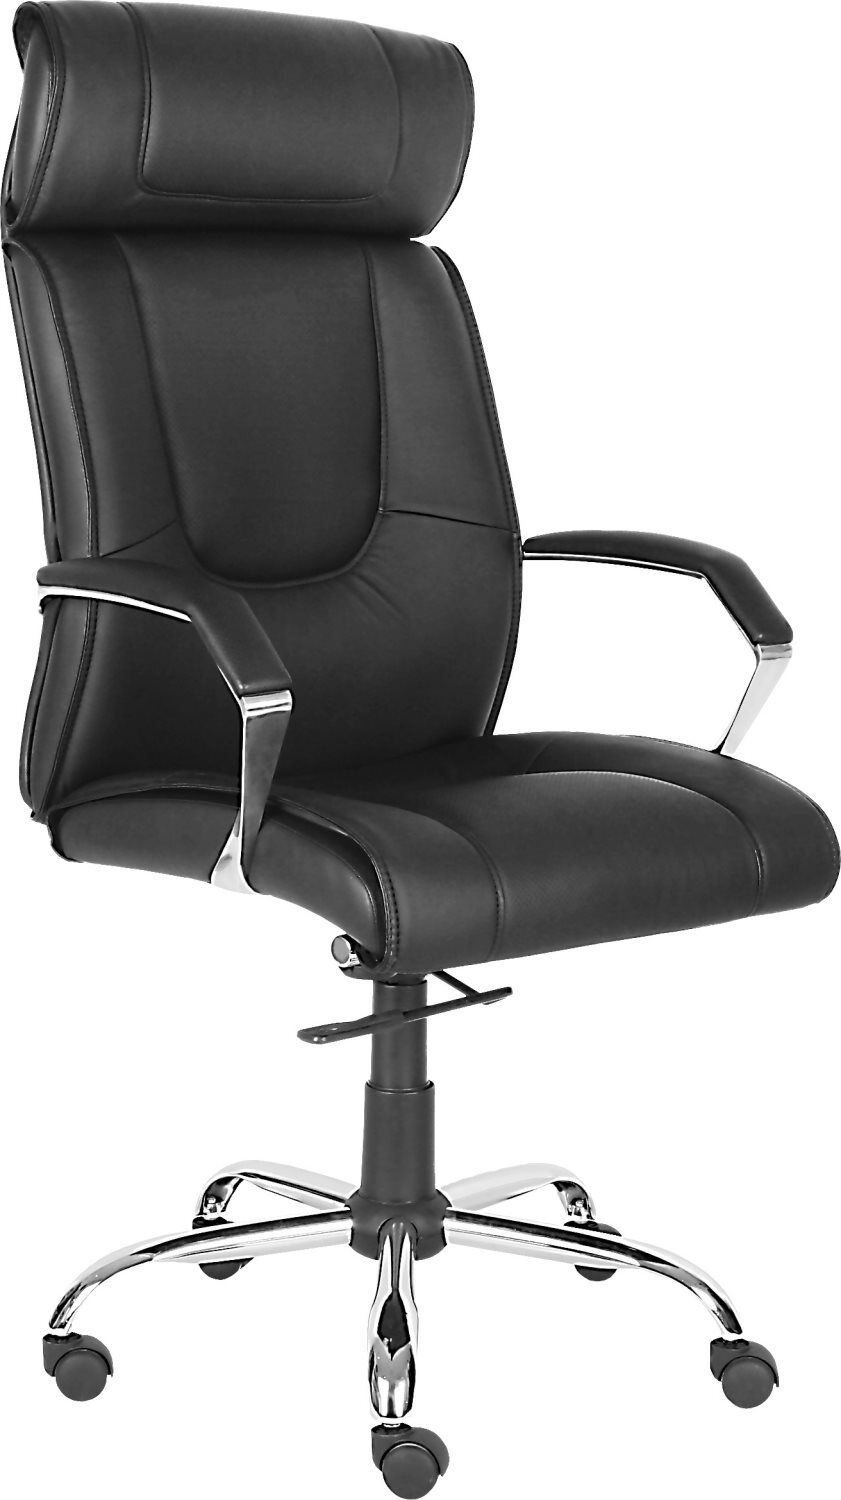 nbrand 1502 sedia ergonomica ufficio sedia da scrivania poltrona direzionale con rotelle e braccioli girevole e regolabile in altezza colore nero - 1502